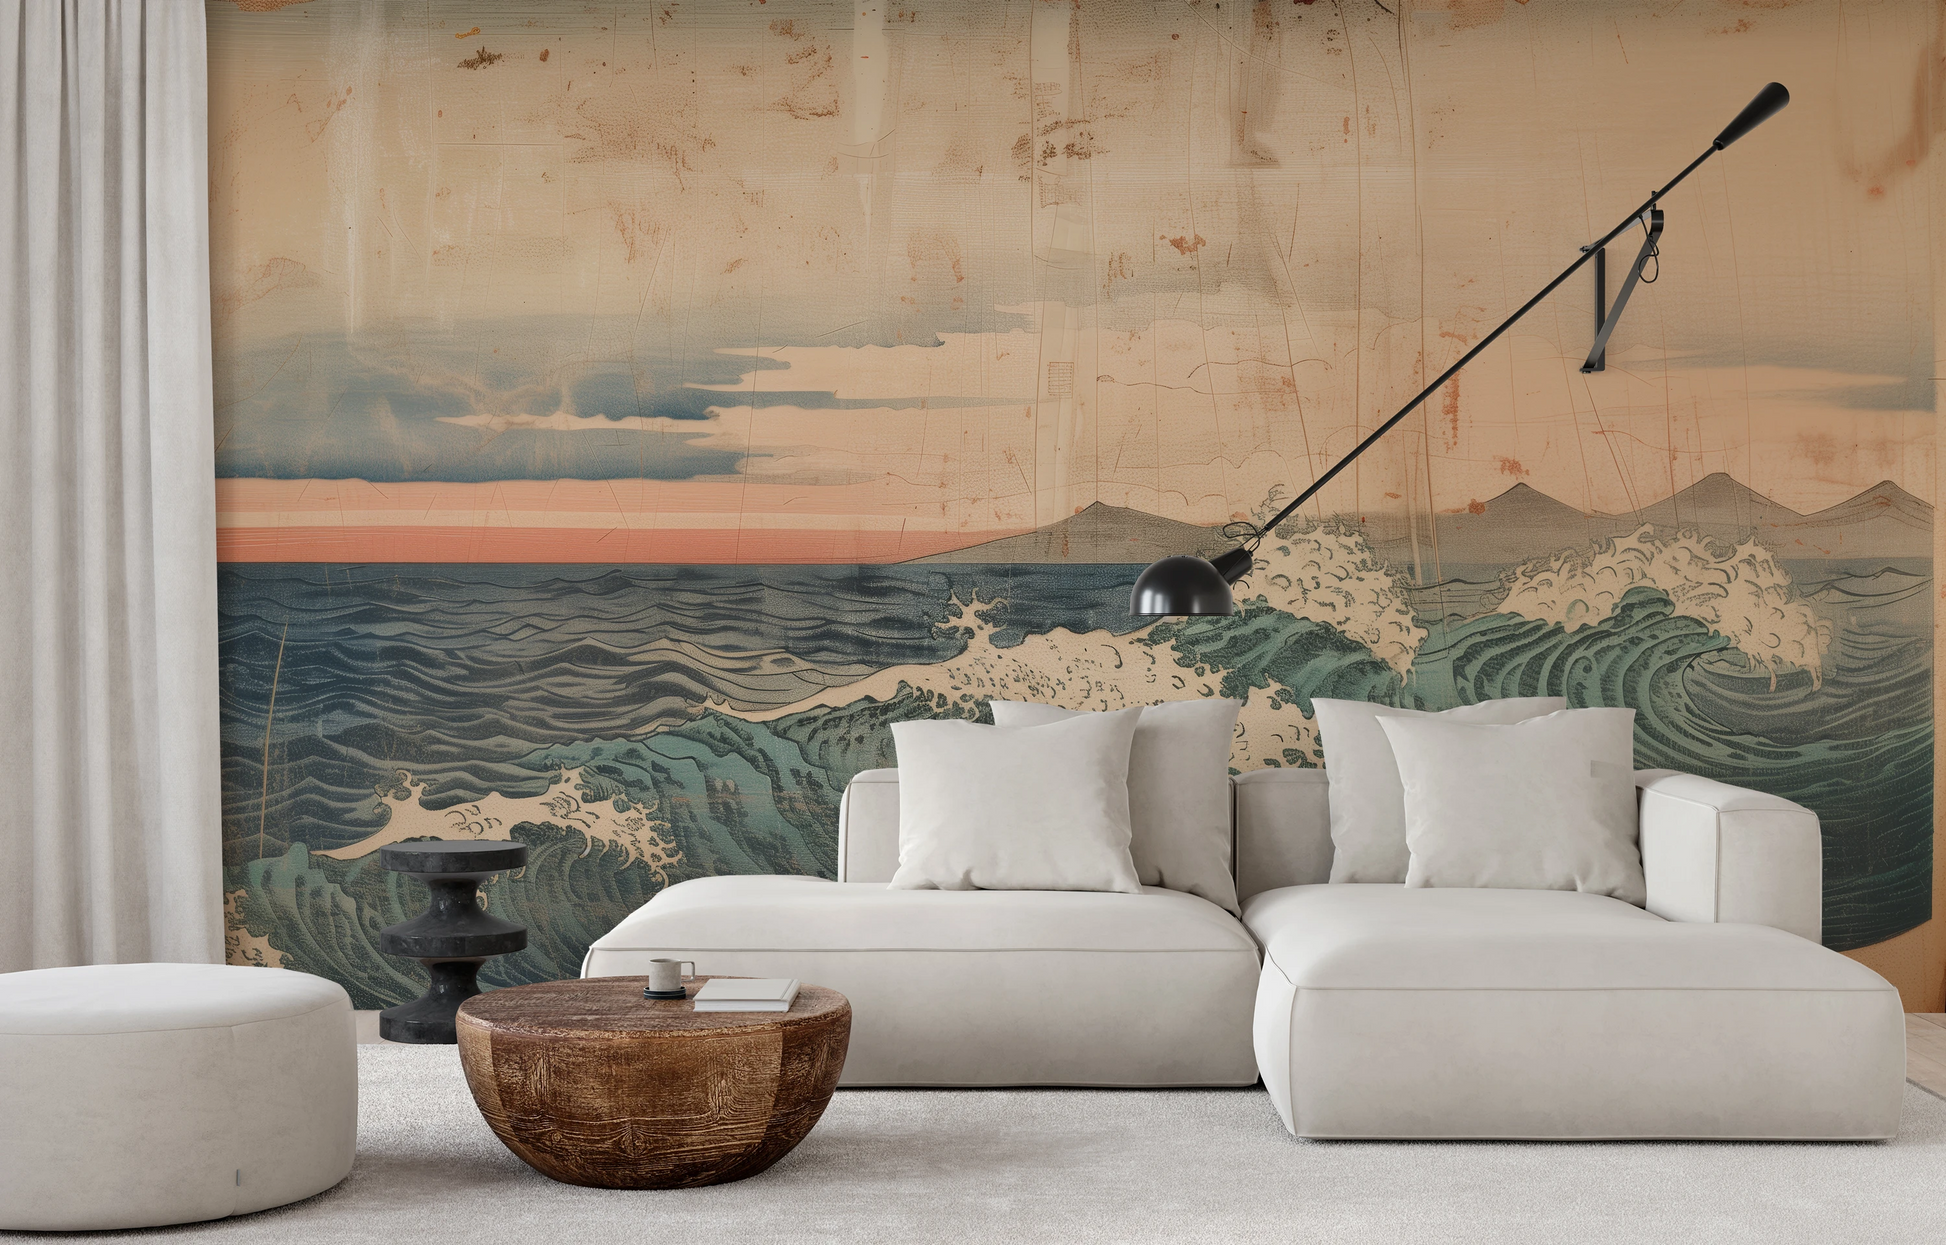 Wzór fototapety malowanej o nazwie Vintage Ocean View pokazanej w aranżacji wnętrza.